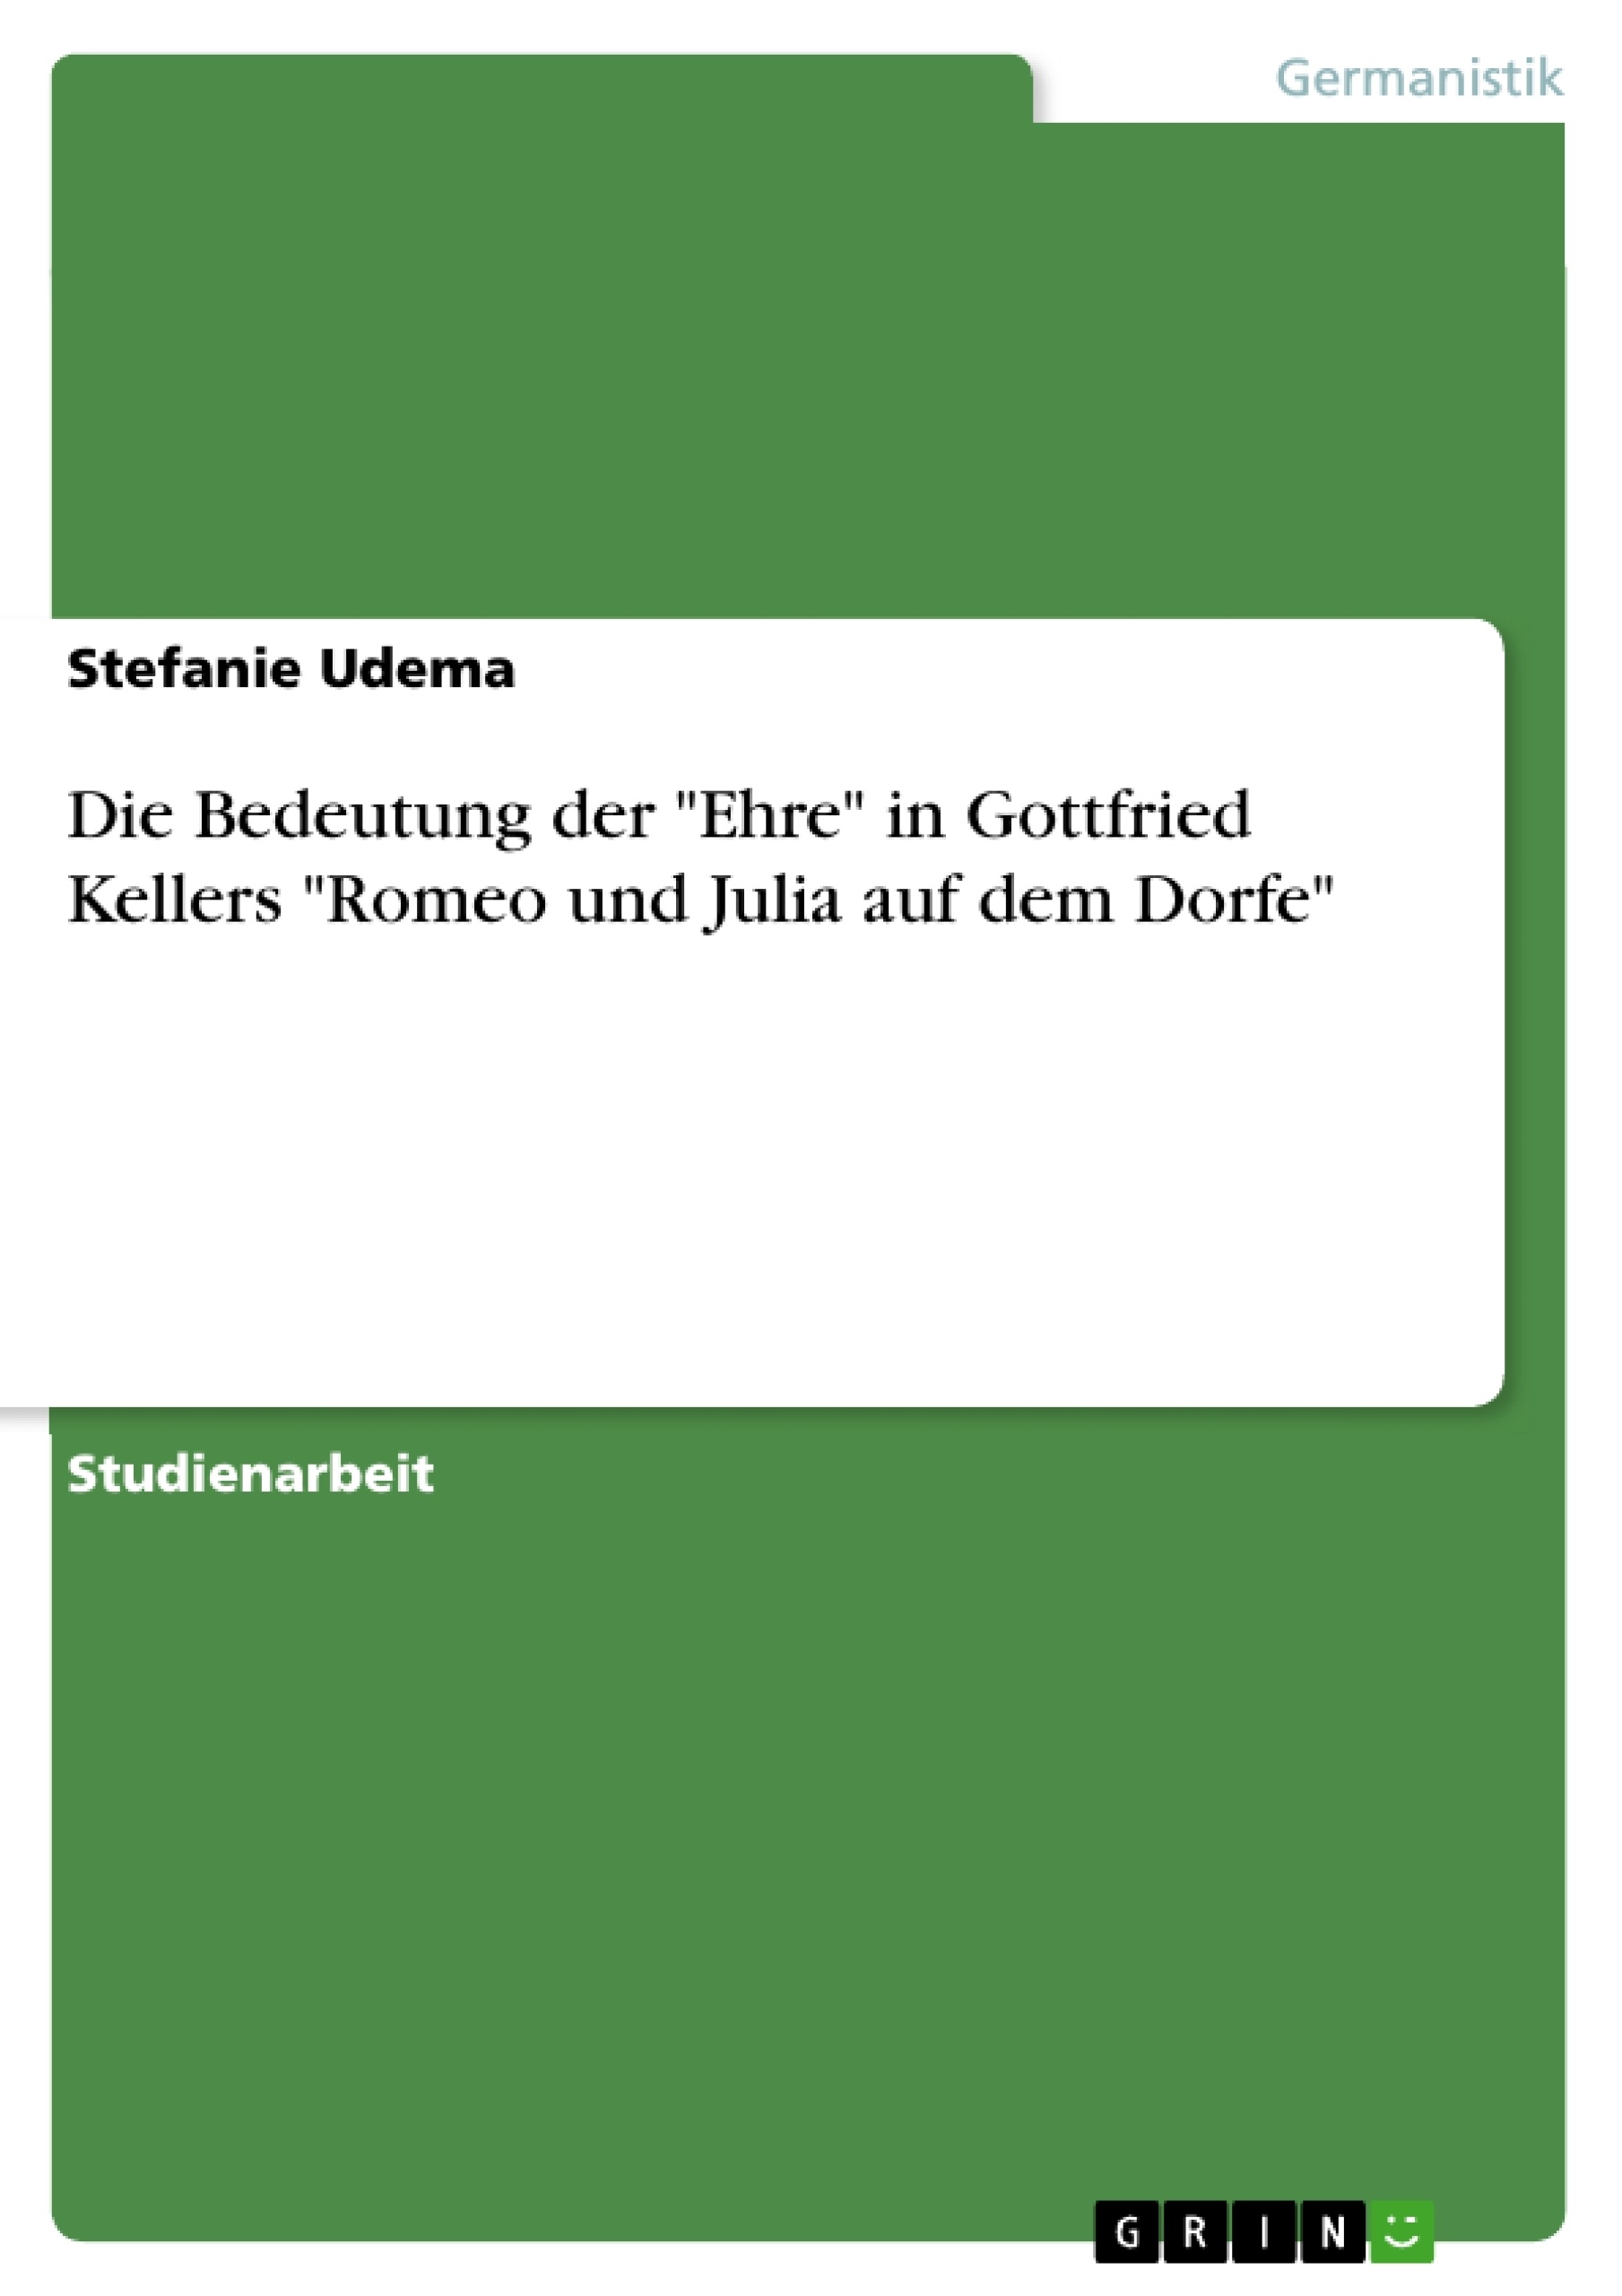 Título: Die Bedeutung der "Ehre" in Gottfried Kellers "Romeo und Julia auf dem Dorfe"